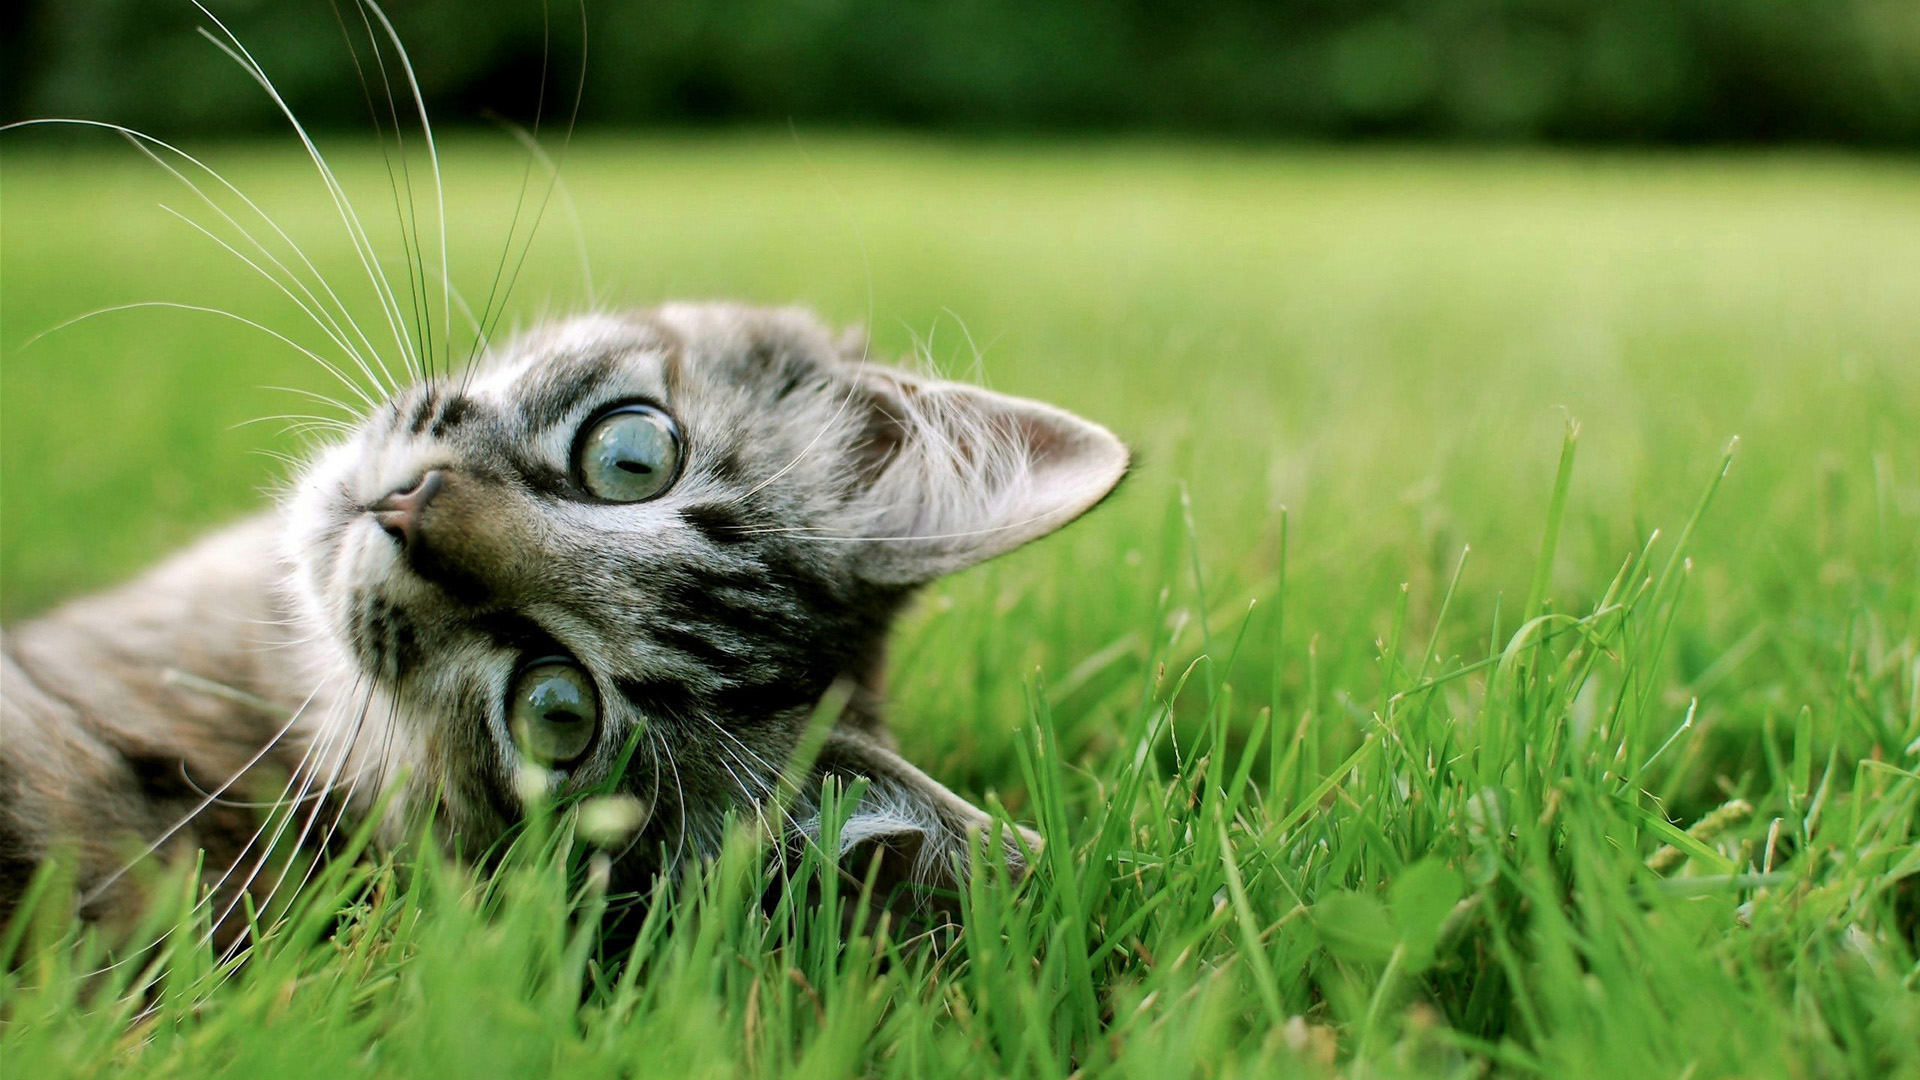 Cat On Grass Wallpaper Desktop Wallpaper | WallpaperLepi